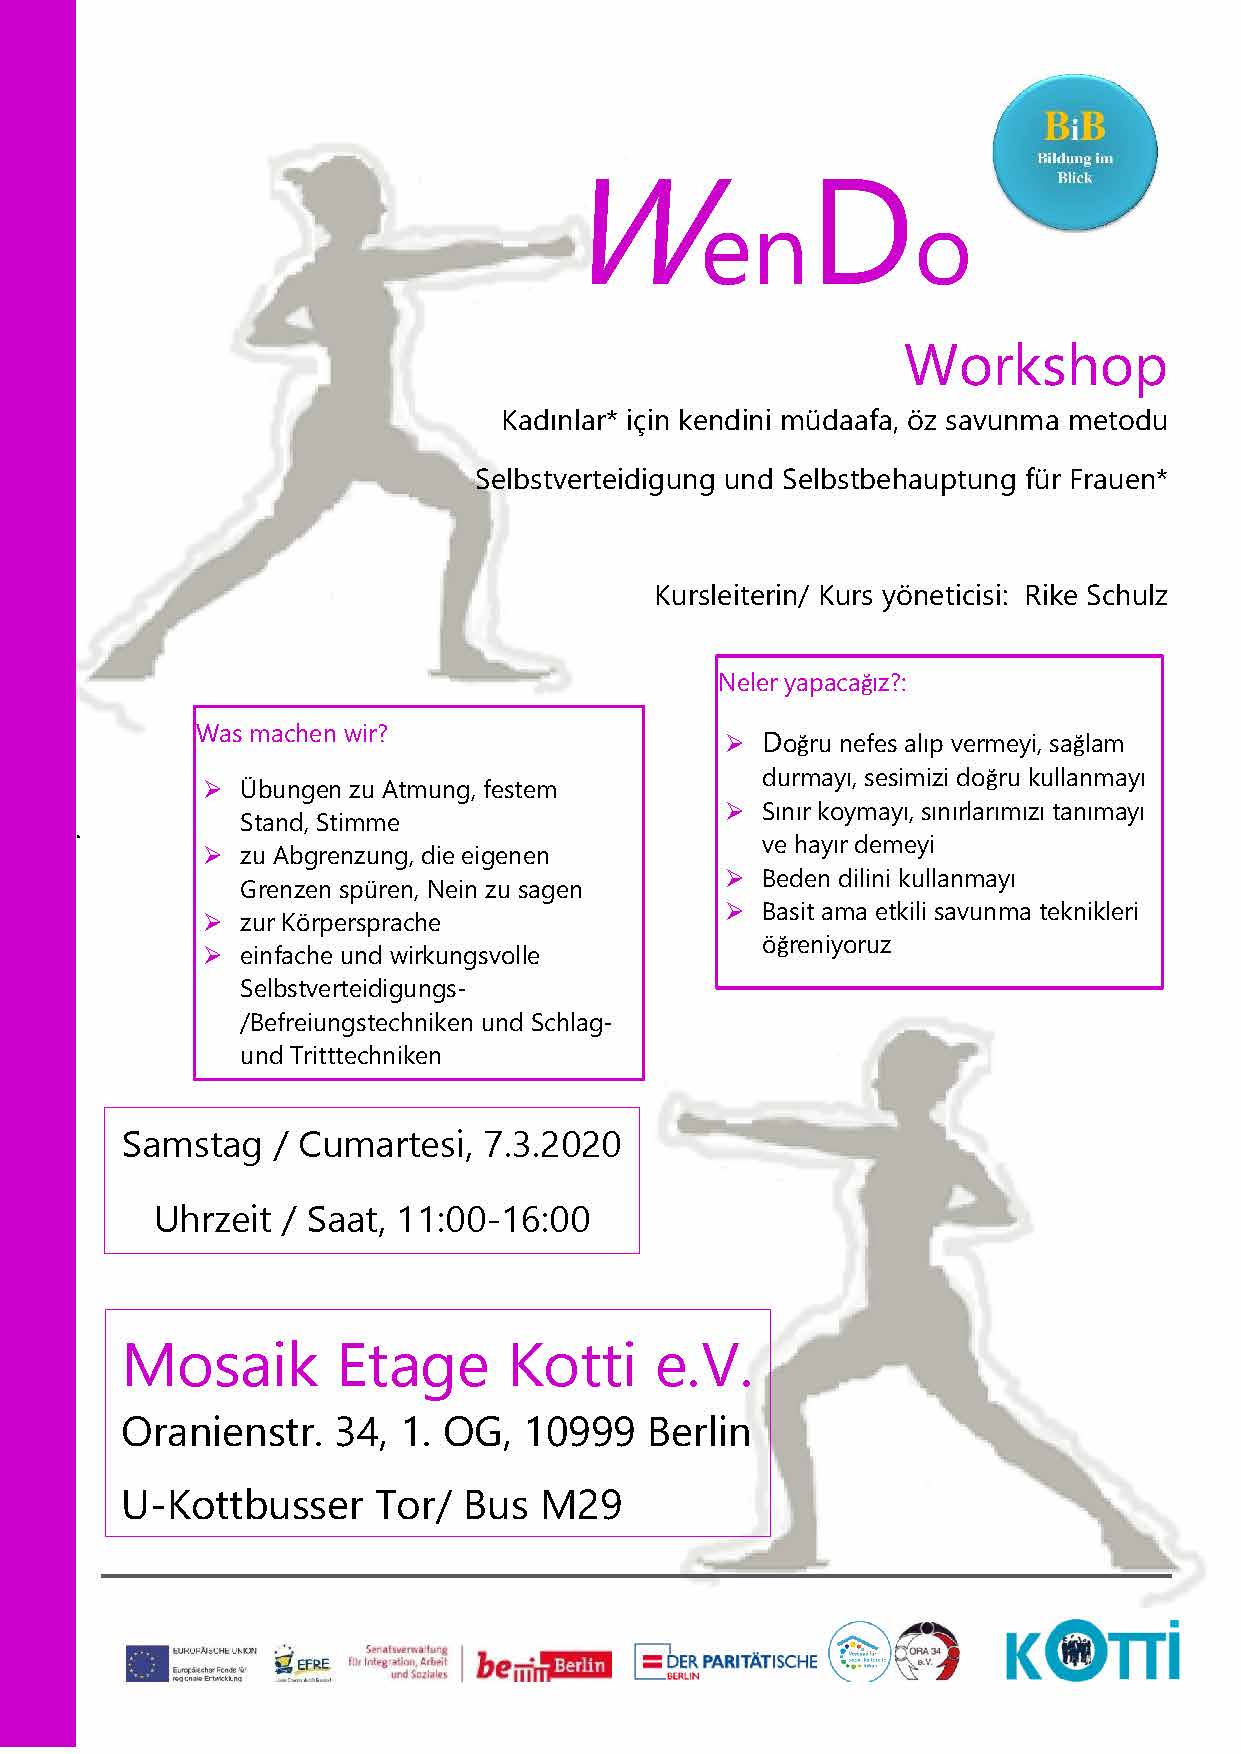 Wen-Do Workshop – Selbstverteidigung und Selbstbehauptung für Frauen –  Kotti e.V.